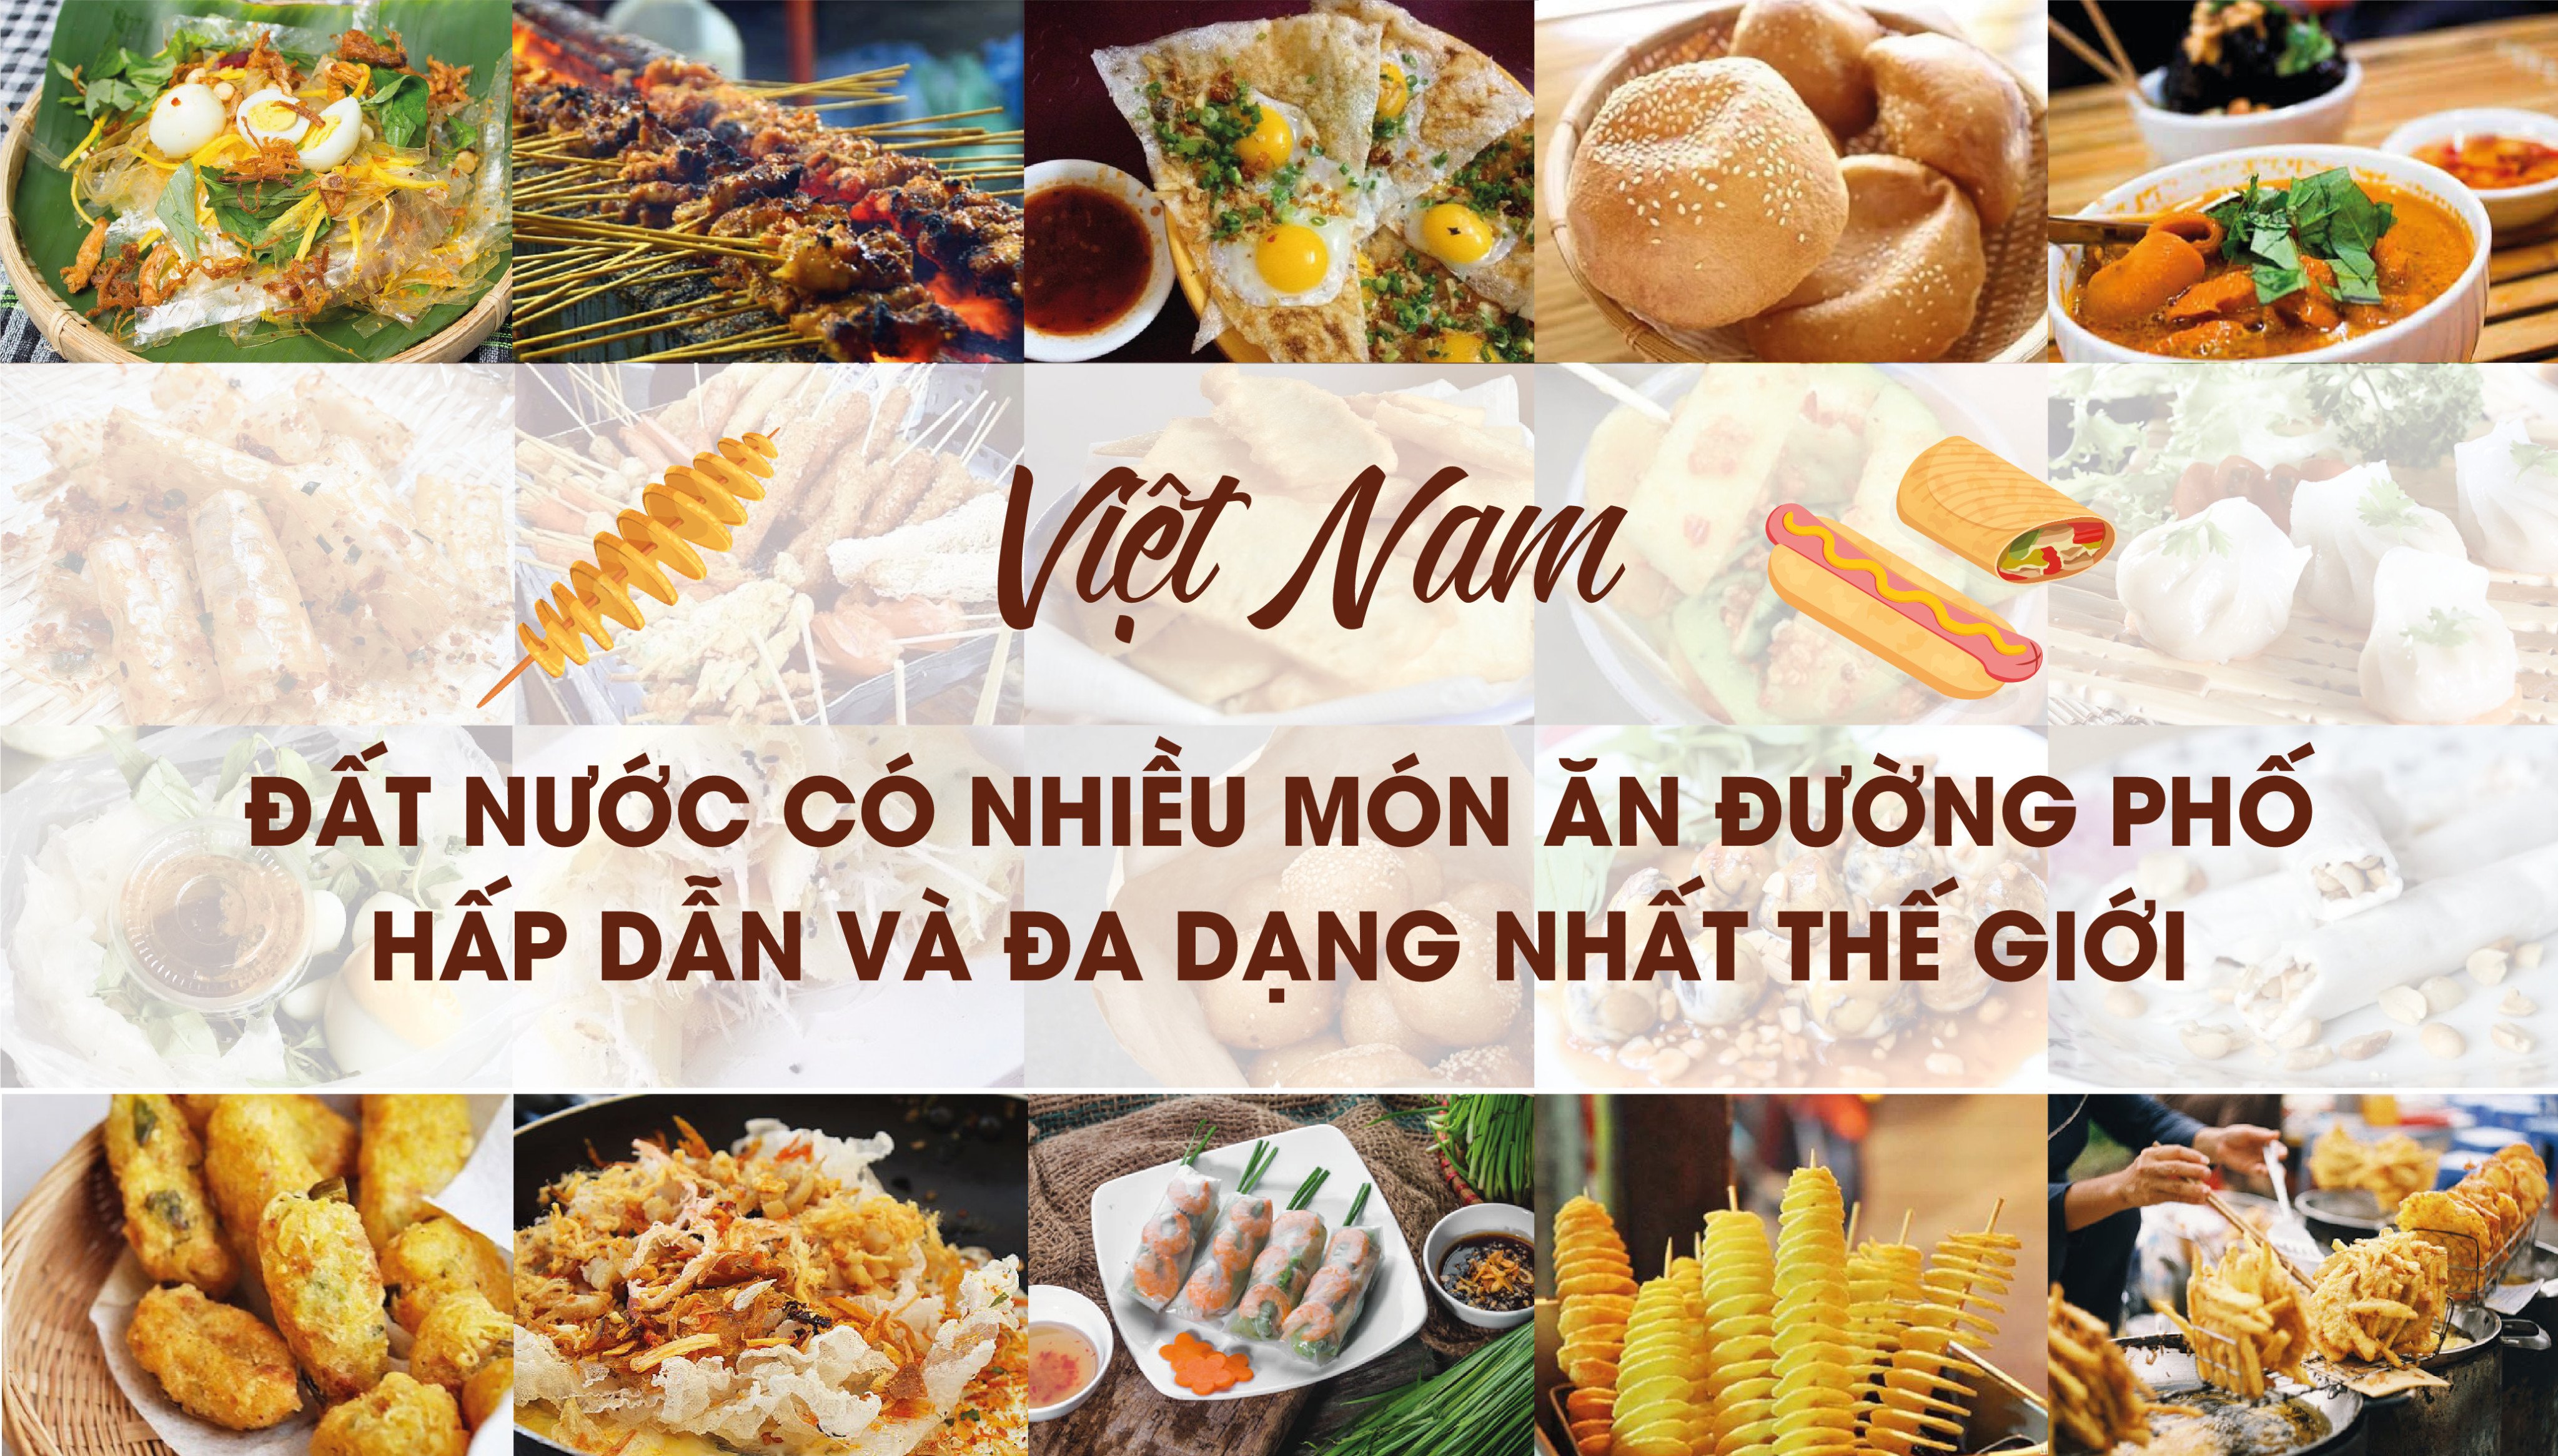 5 đặc sản ẩm thực Việt Nam được 2 tổ chức thế giới xác lập kỷ lục - Ảnh 4.